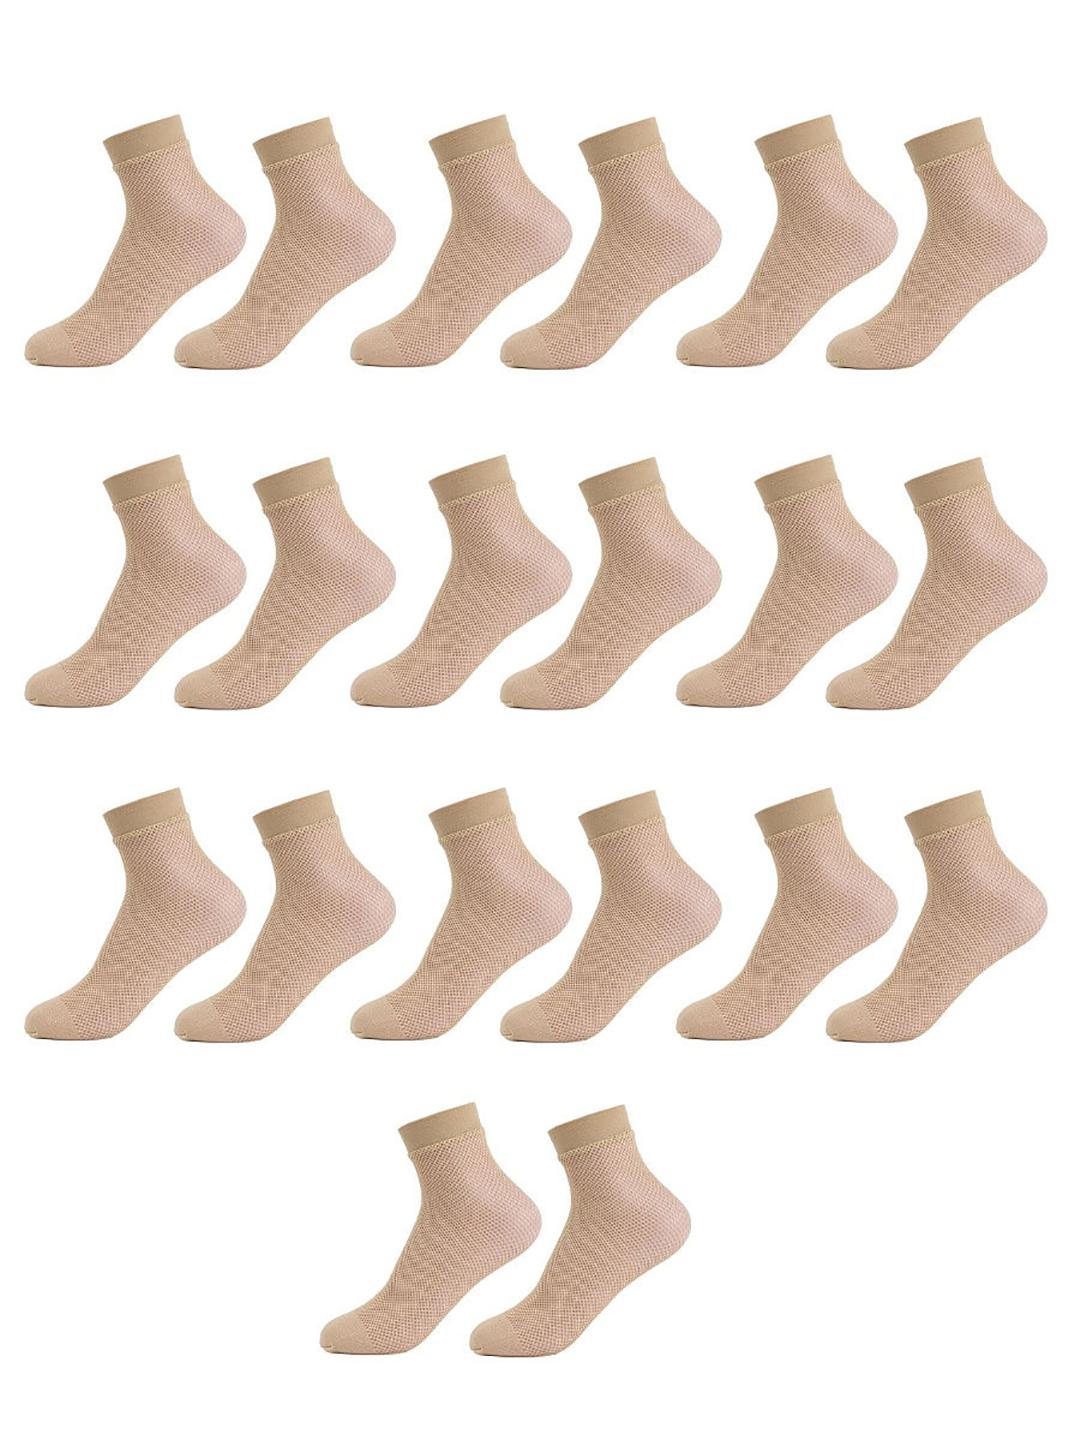 Комплект носков женских ЛАРИСА NEYLON бежевых 36-40